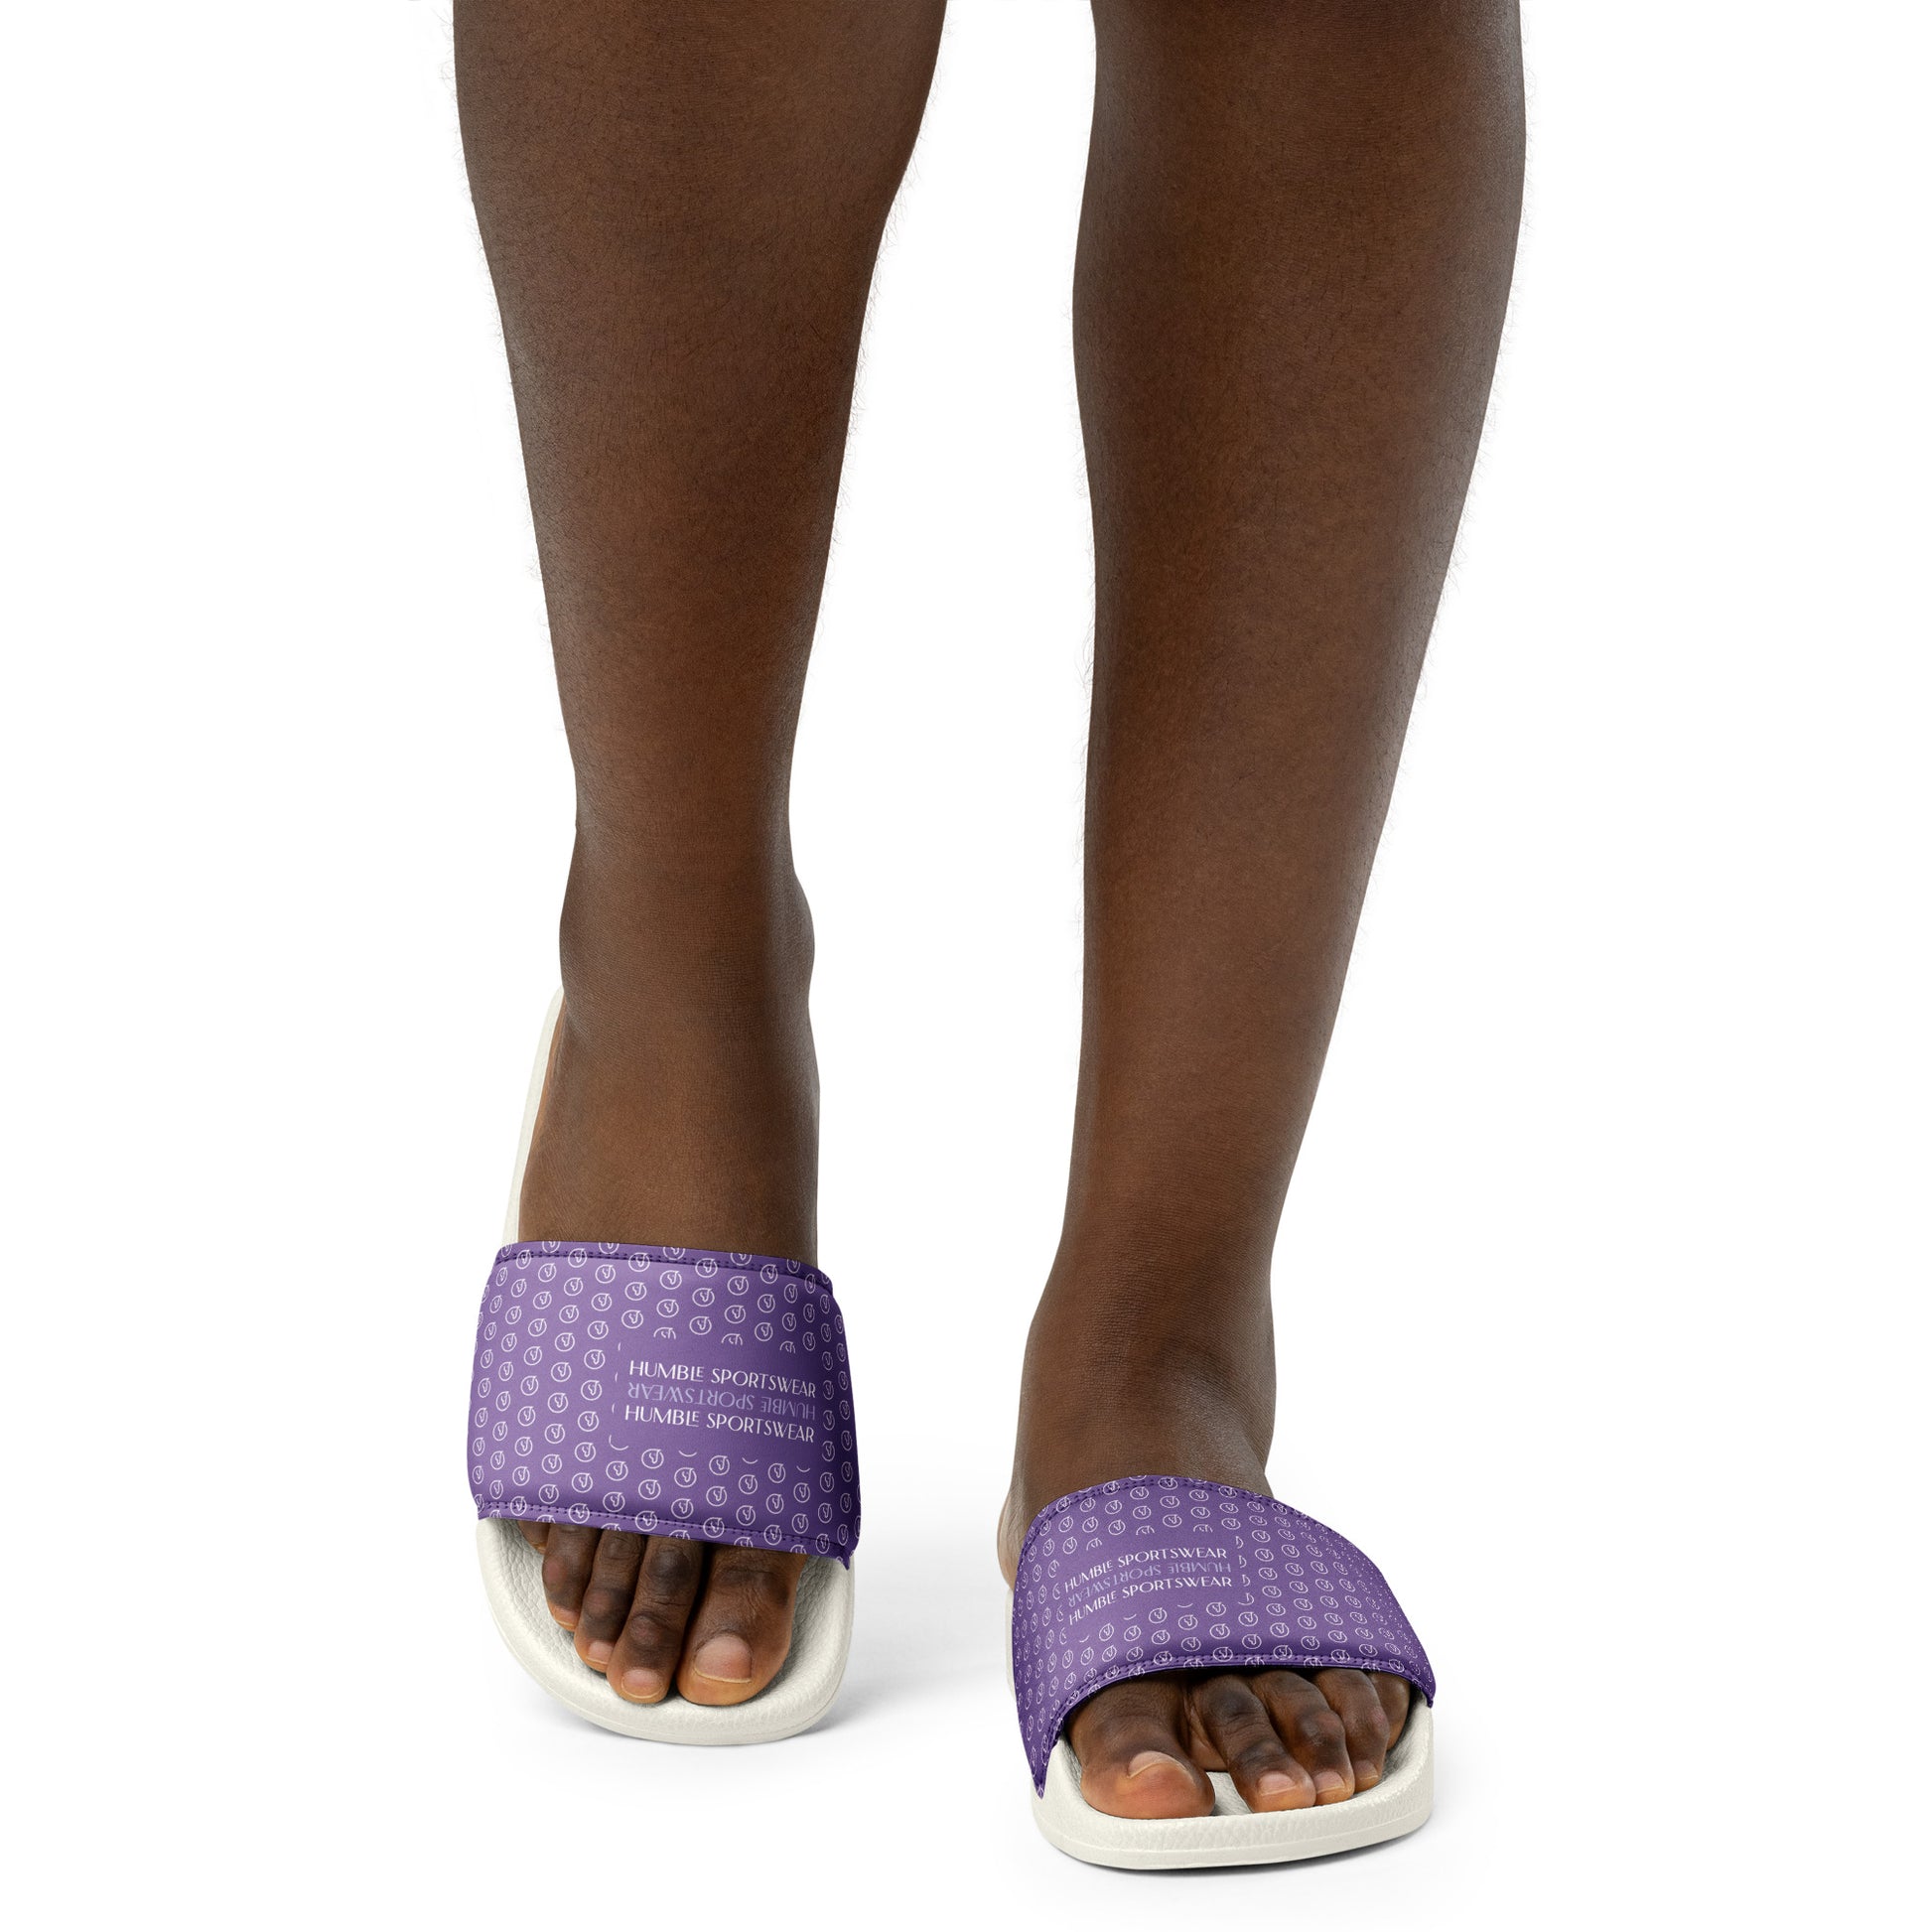 Humble Sportswear, women's casual daily wear slip on slides sandals purple